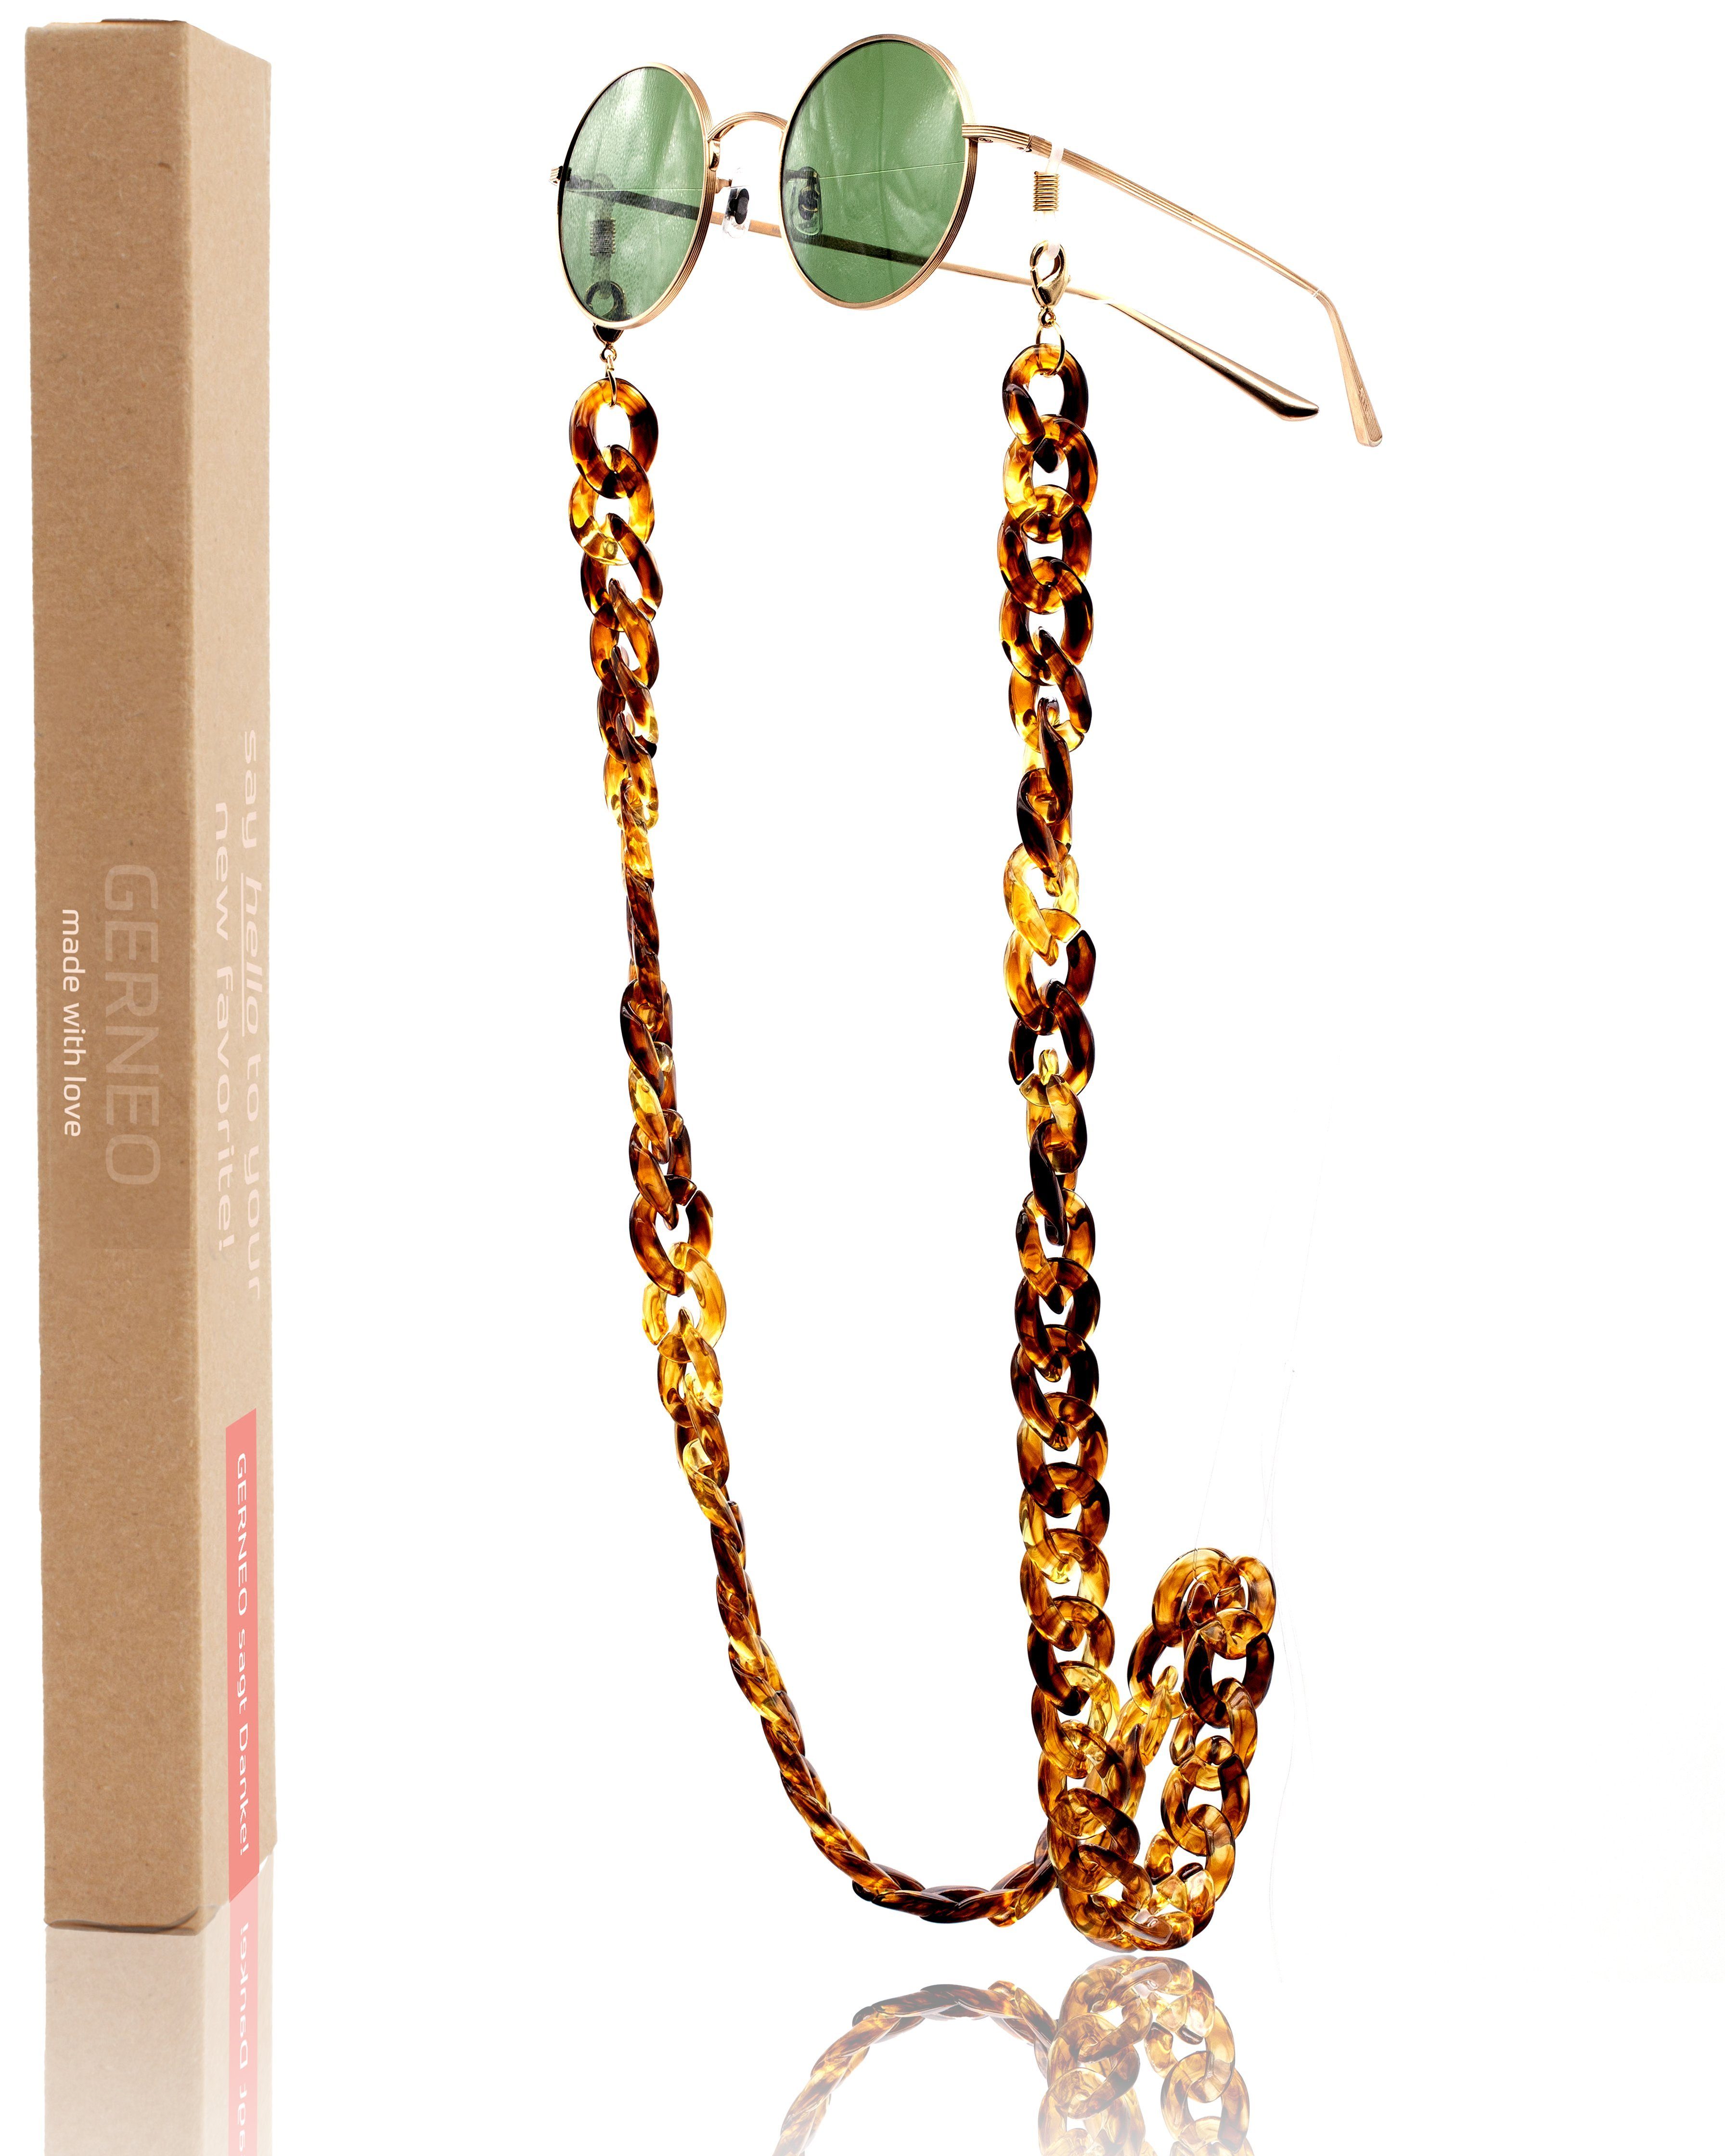 GERNEO Brillenkette GERNEO® - Havanna – Maskenhalter & Brillenkette Gold aus Acryl, korrosionsbeständig einzigartig hochwertige Brillen Kette Brillenband